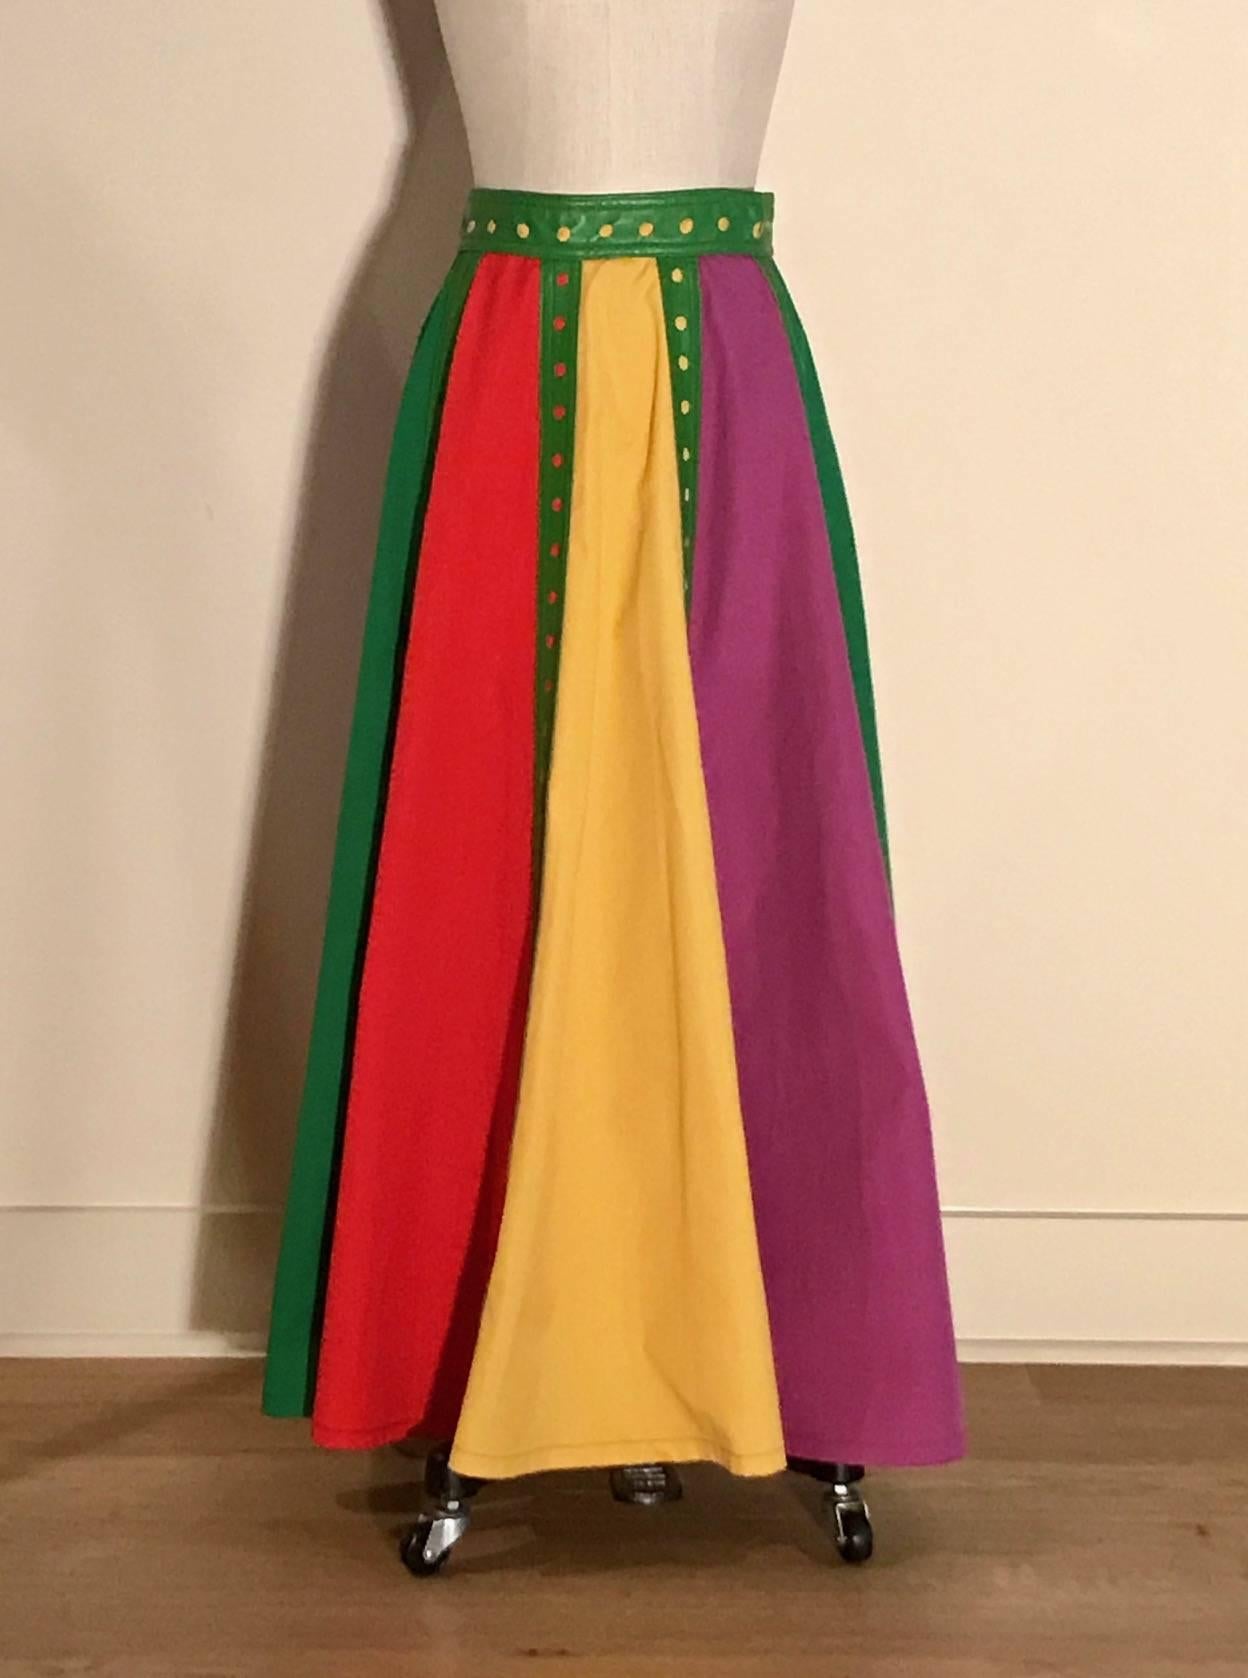 Giorgio Sant'Angelo pour Samuel Robert (plus connu pour ses vêtements en cuir haut de gamme) toile de coton légère en jaune, rouge, violet et vert avec garniture en cuir vert avec détail de cercle découpé. Se ferme au dos par une fermeture éclair et